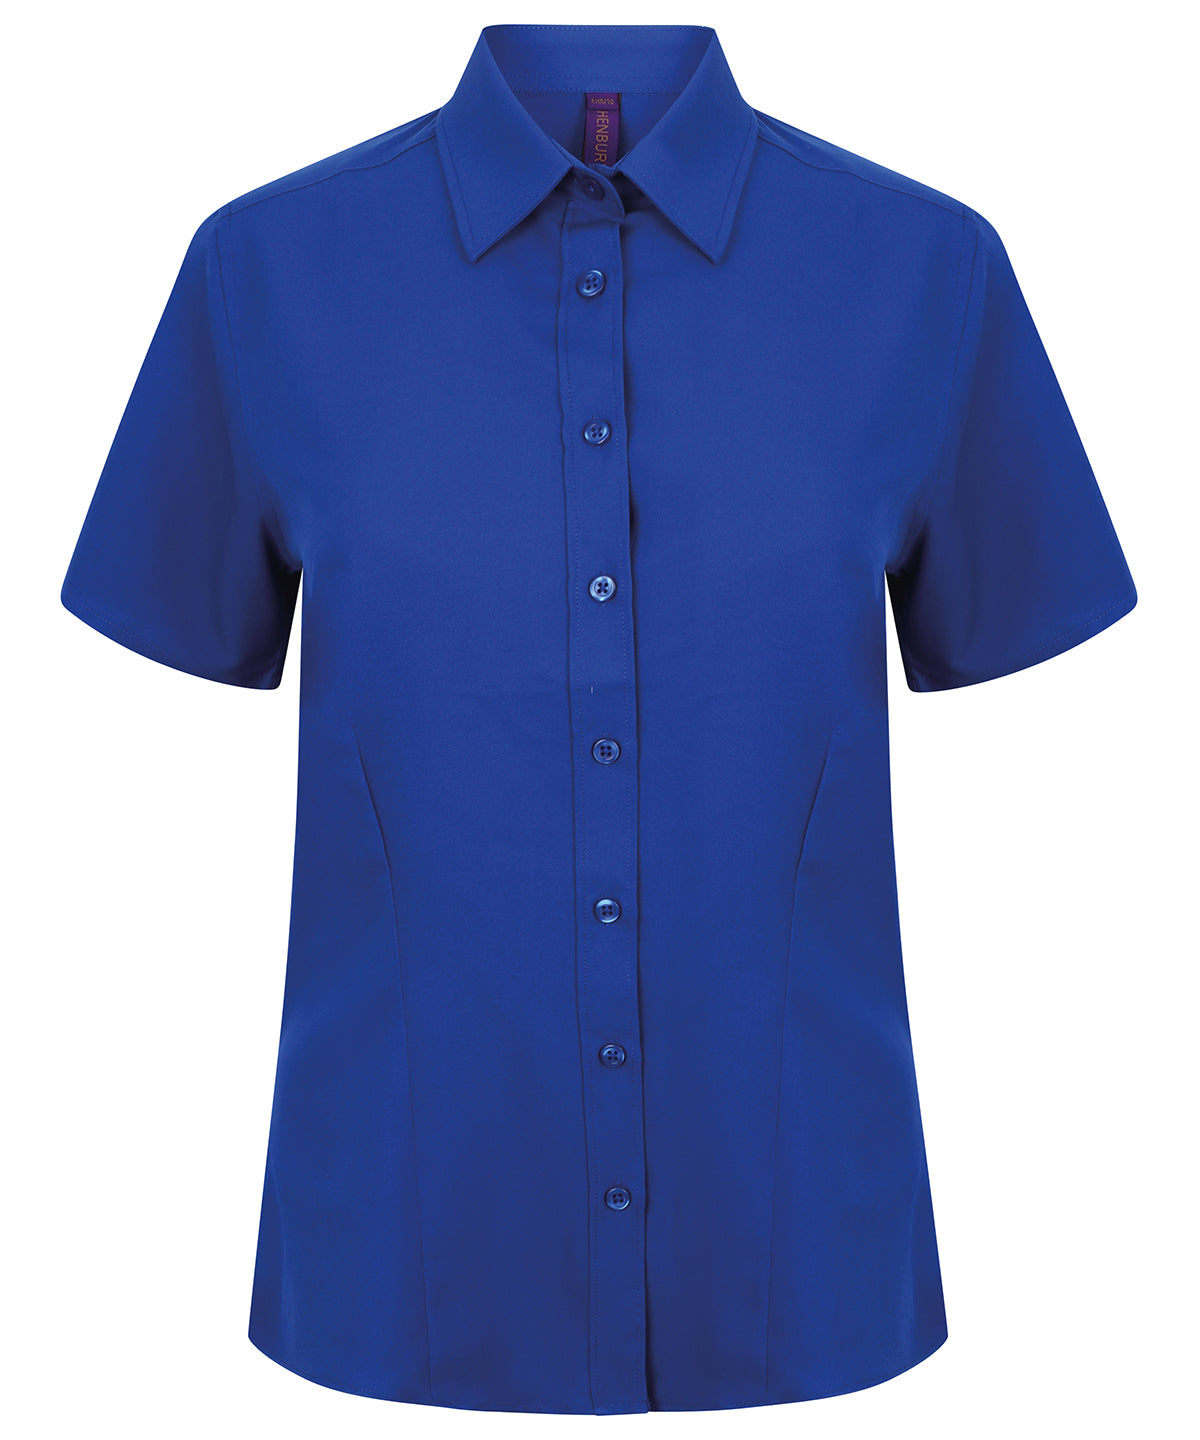 Personalised Shirts - Black Henbury Women's wicking antibacterial short sleeve shirt